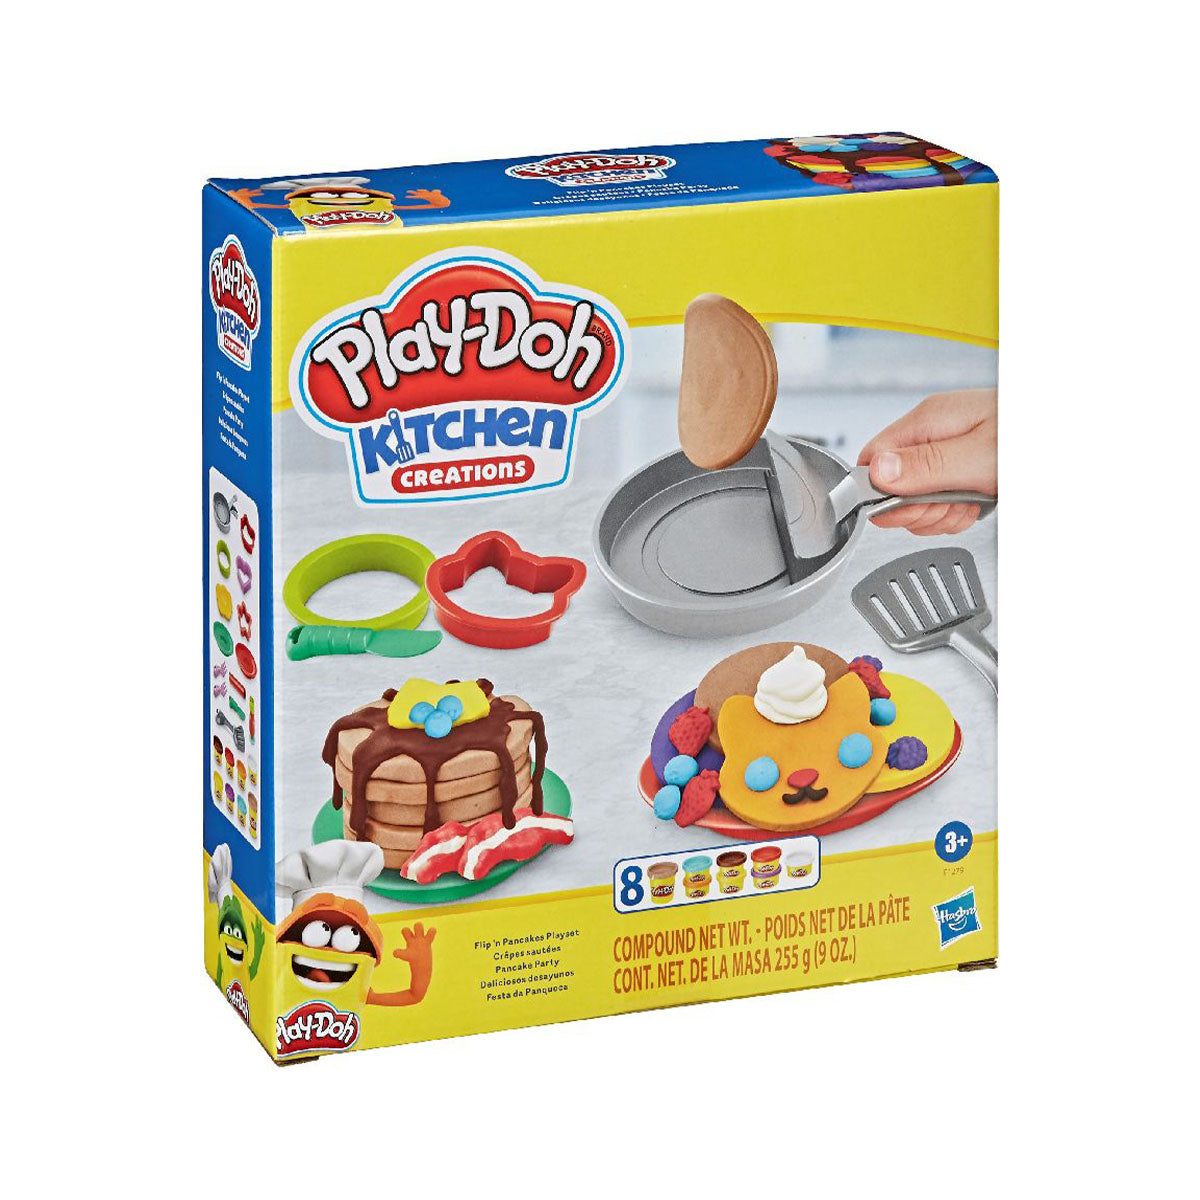 Lekker kliederen en creatief bezig zijn, welk kind houdt daar niet van?! Met deze flip in de pan speelset van het merk Play-Doh is dat geen probleem!  Liefhebbers van pannekoeken opgelet! De speelgoedkoekenpan van deze Play-Doh-ontbijtset laat je namaakpannenkoeken echt draaien in de lucht met een druk op de knop. VanZus